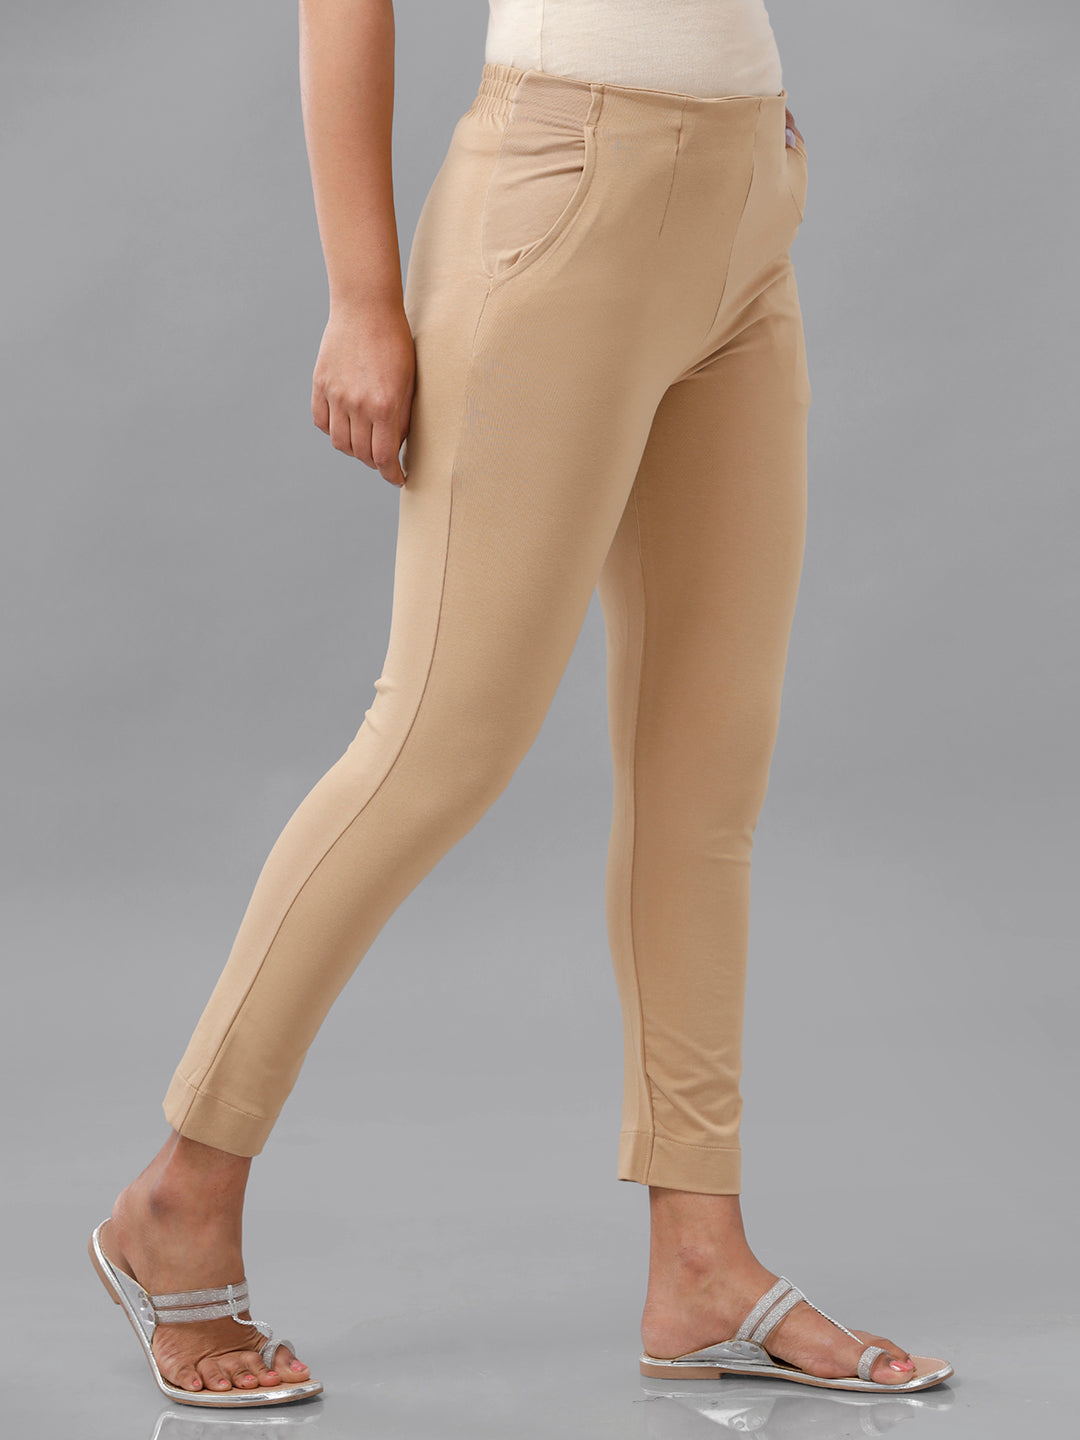 NTX Womens Cotton Flex Ankle Length Trouser PantsPencil Pants for Women   Sky Blue